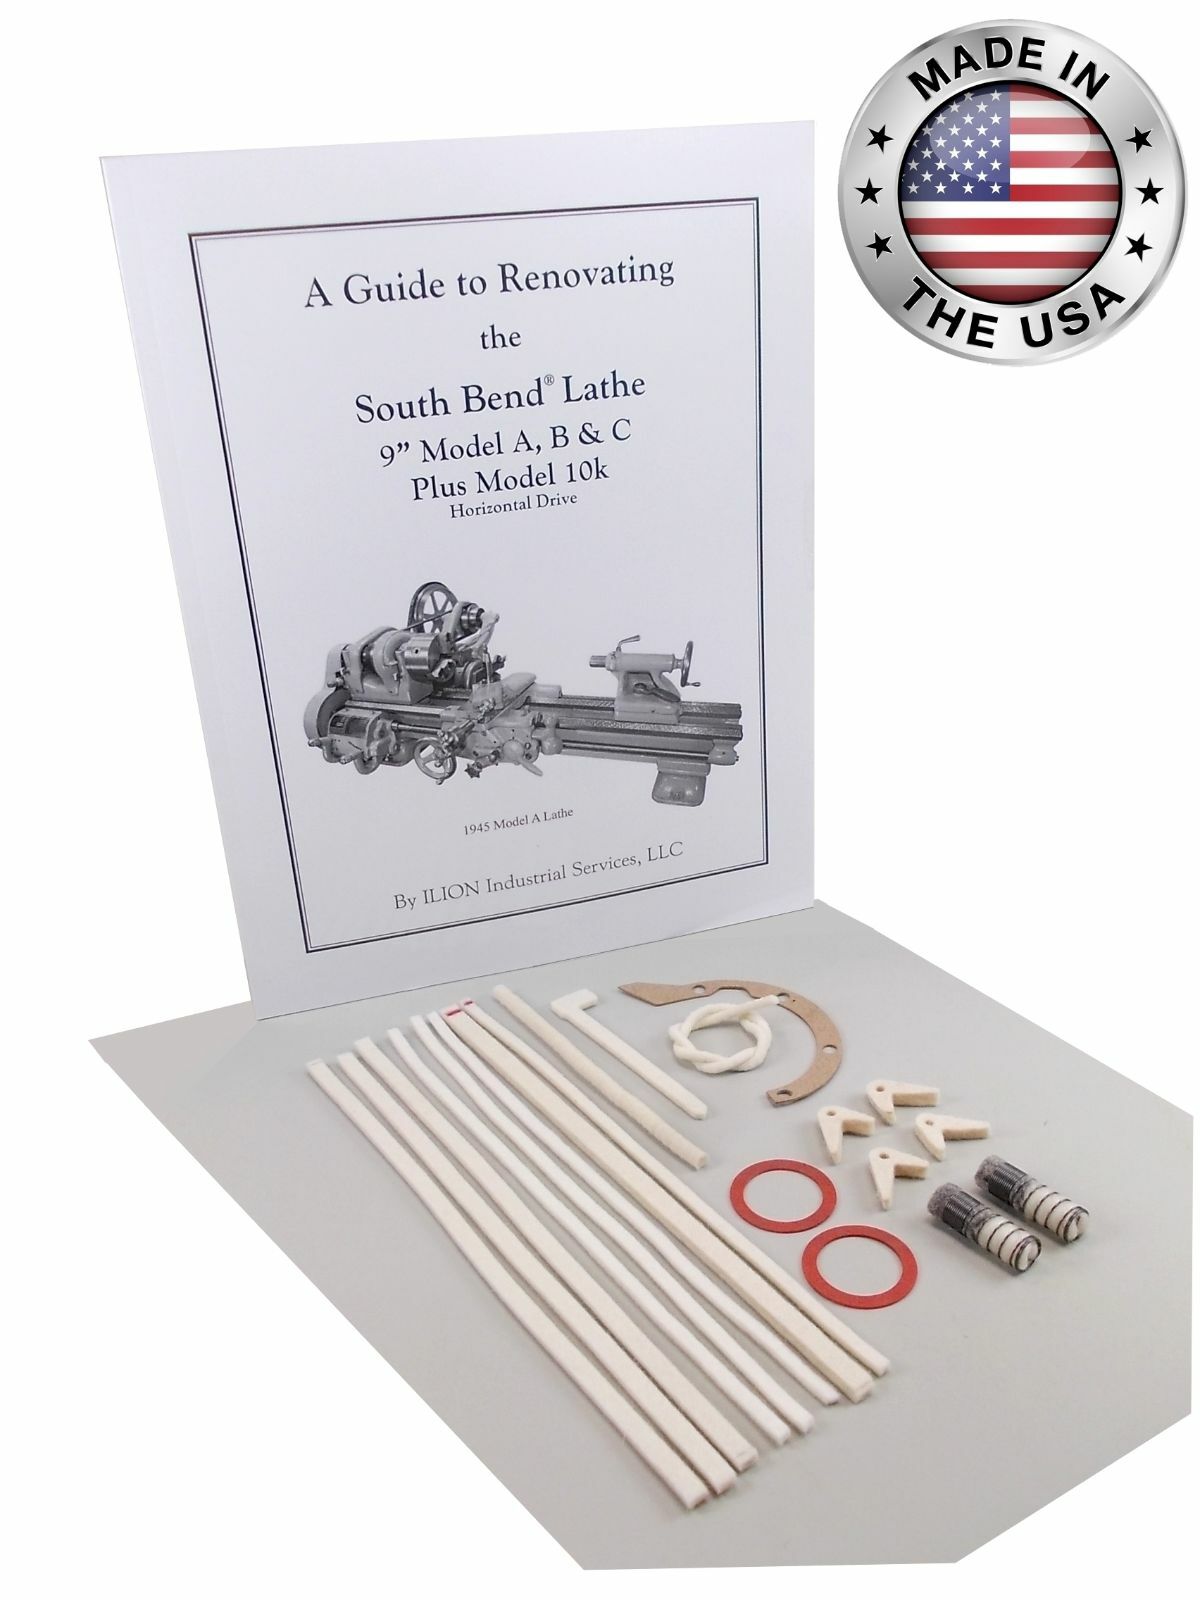 South Bend Lathe 9" Model A - Rebuild Guide & Parts Kit (horizontal Drive)